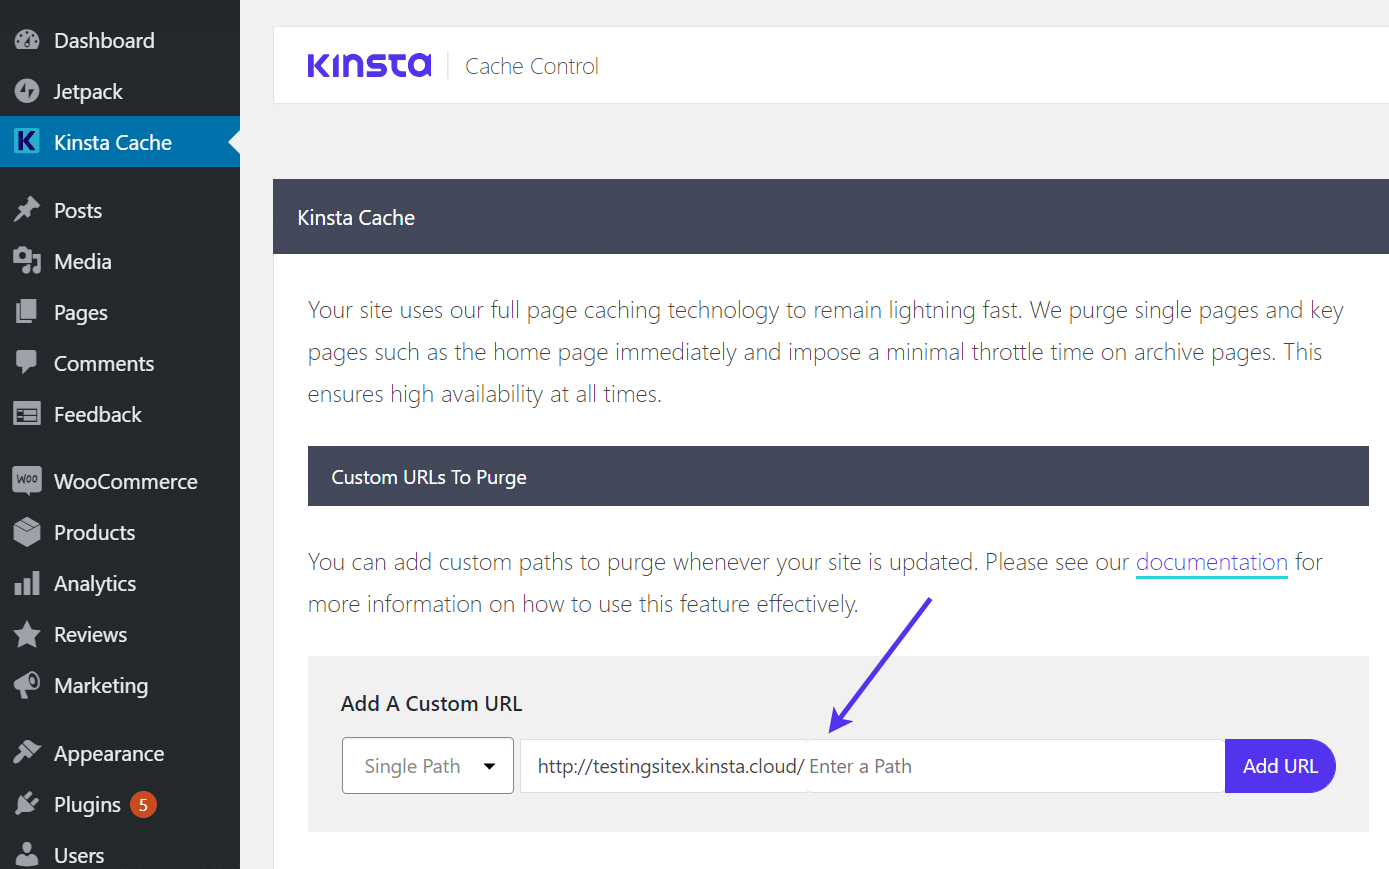 Füge eine benutzerdefinierte URL hinzu", um den Kinsta-Cache automatisch zu löschen